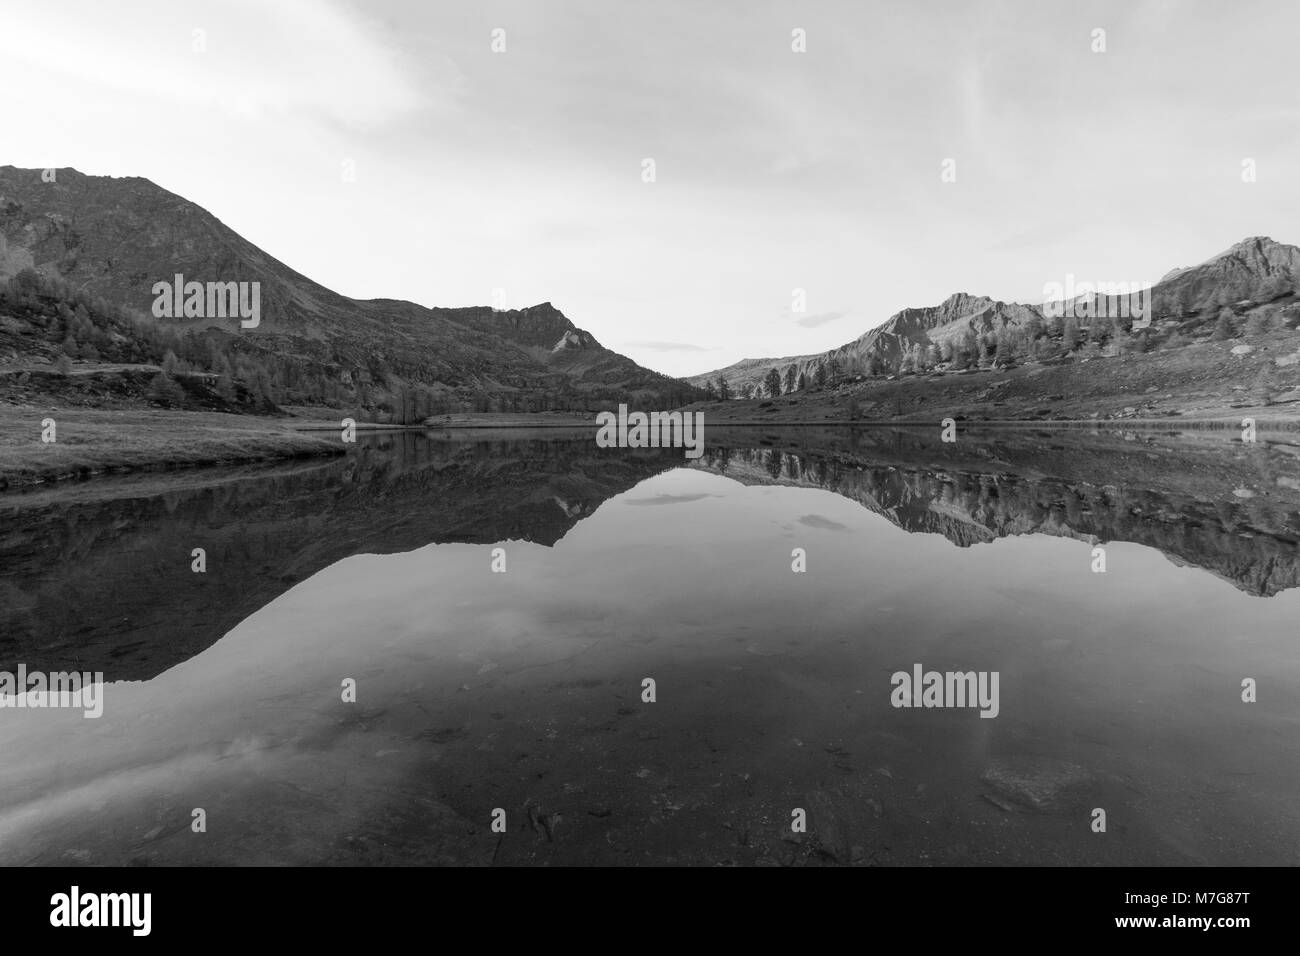 Schöne schwarze und weiße Erfassung der See von Dres, in Ceresole Reale, Italien. Mein Profil zu anderen Fotos sehen! Bis später! Stockfoto